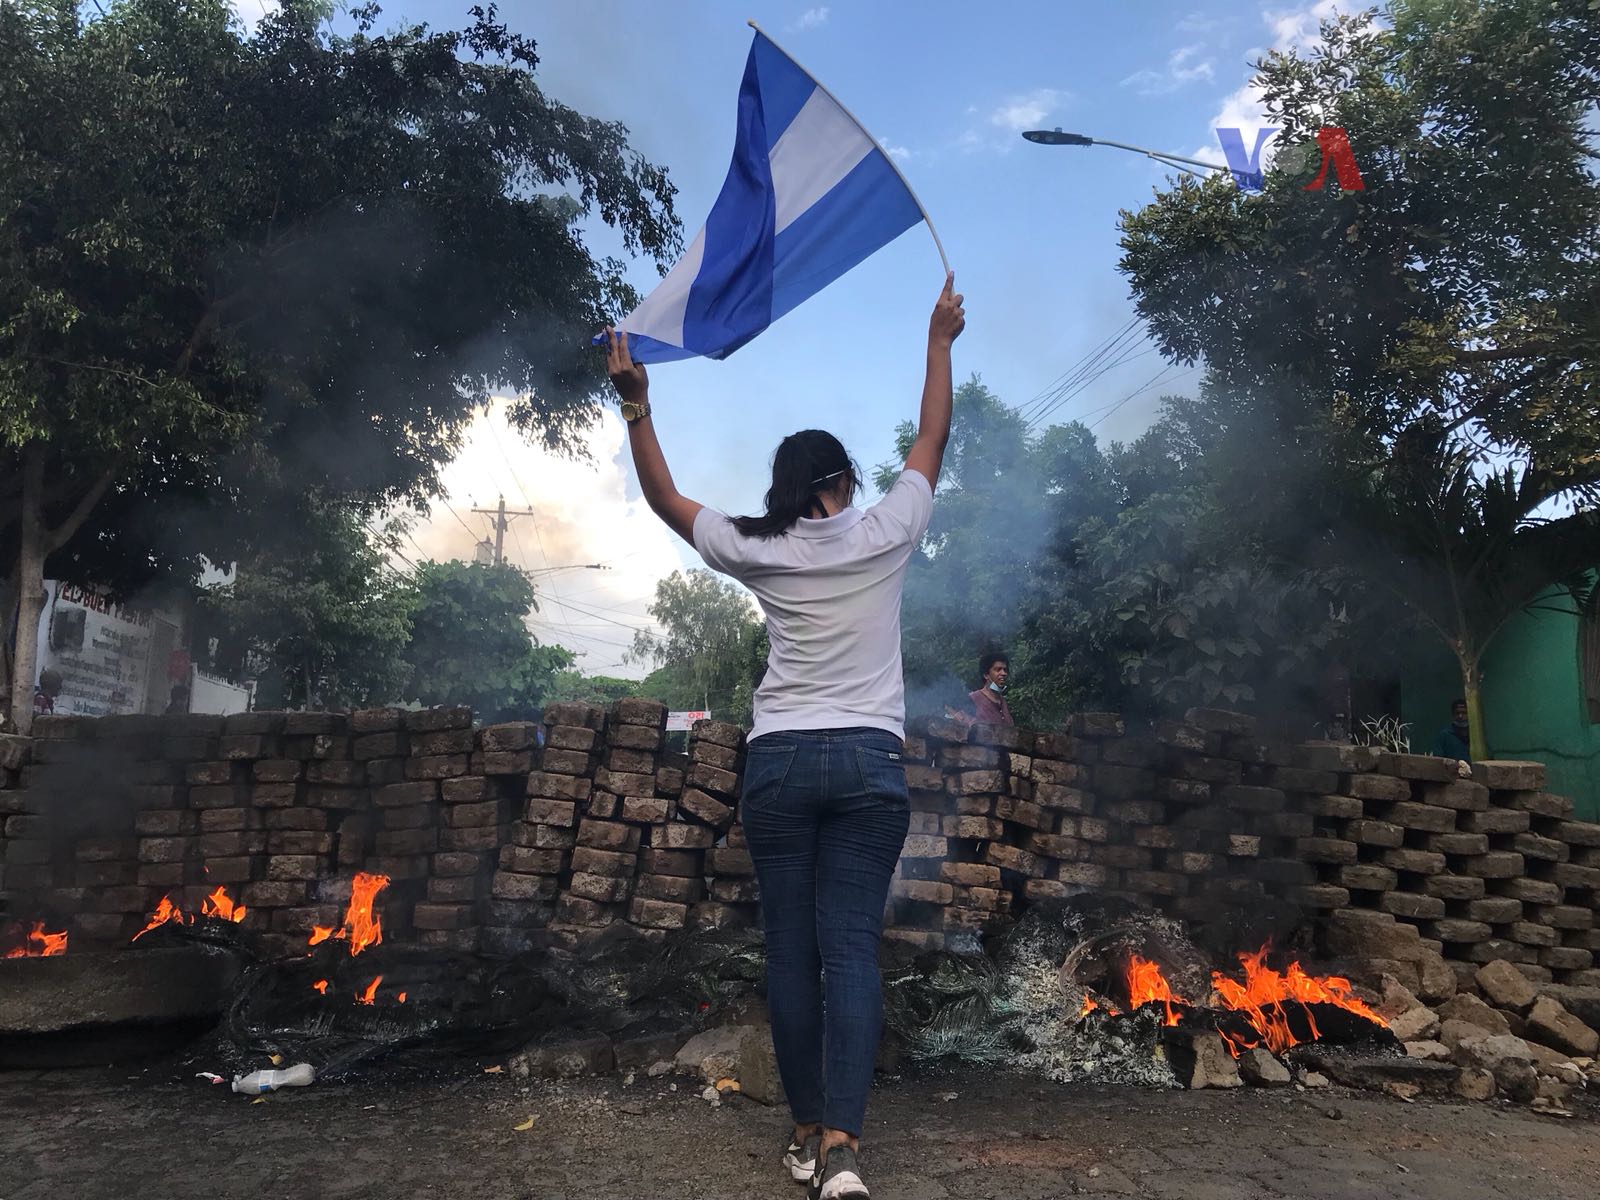 A cinco años de resistencia, continúa represión de Ortega, denuncia Colectivo de derechos humanos. Foto: Artículo 66 / Voz de América